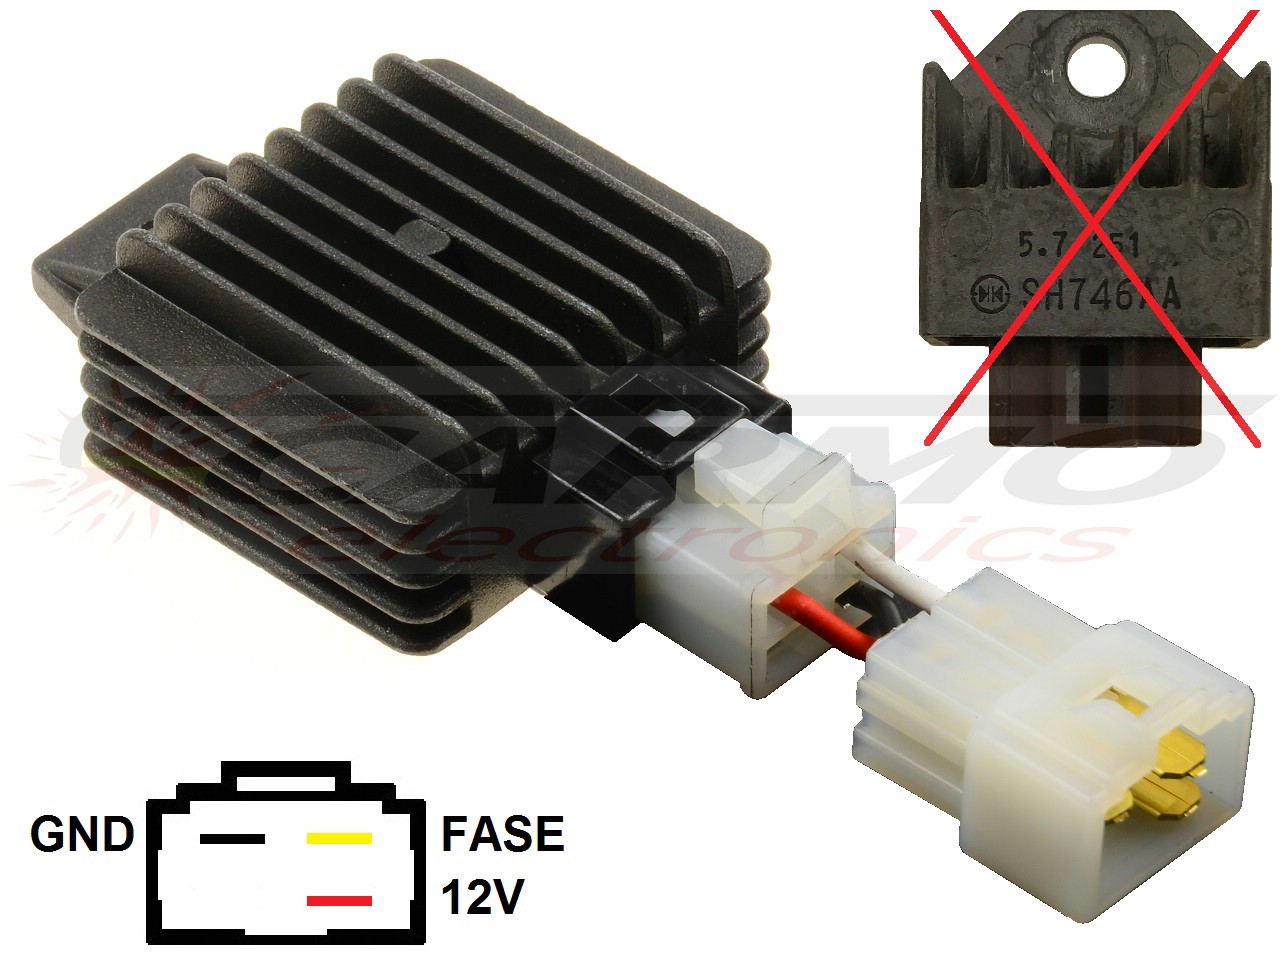 CARR9852 SH746AA voltage regulator (improved) - Clique na Imagem para Fechar